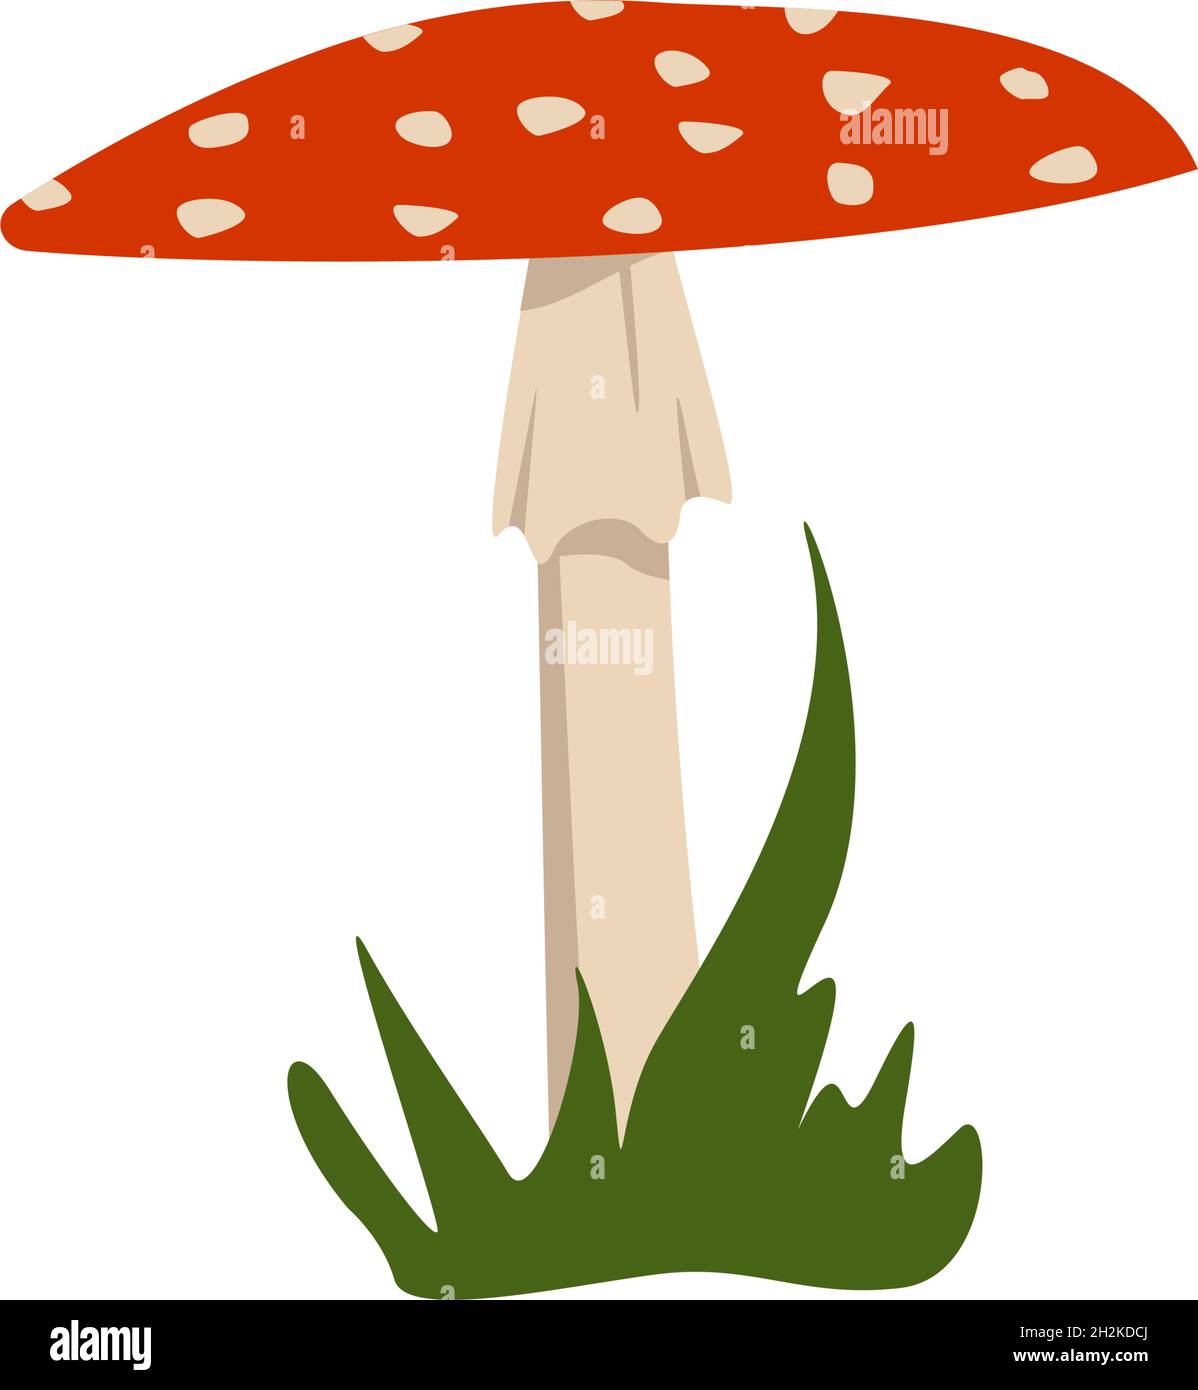 Amanita Pilze mit roten Mützen und weißen Flecken. Stock Vektor